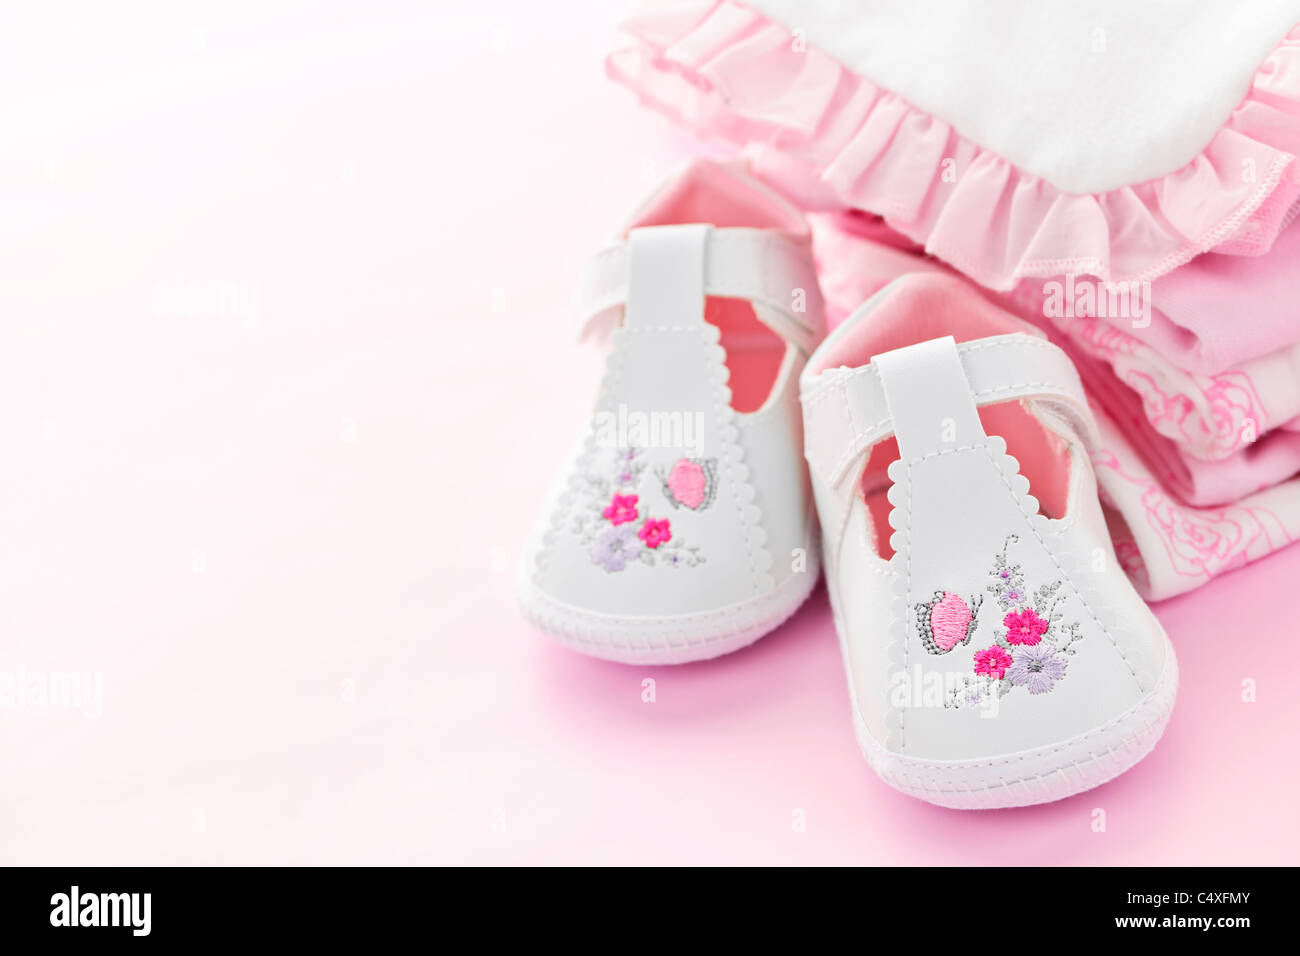 Baby Madchen Kleidung Und Schuhe Fur Baby Dusche Auf Rosa Hintergrund Stockfotografie Alamy